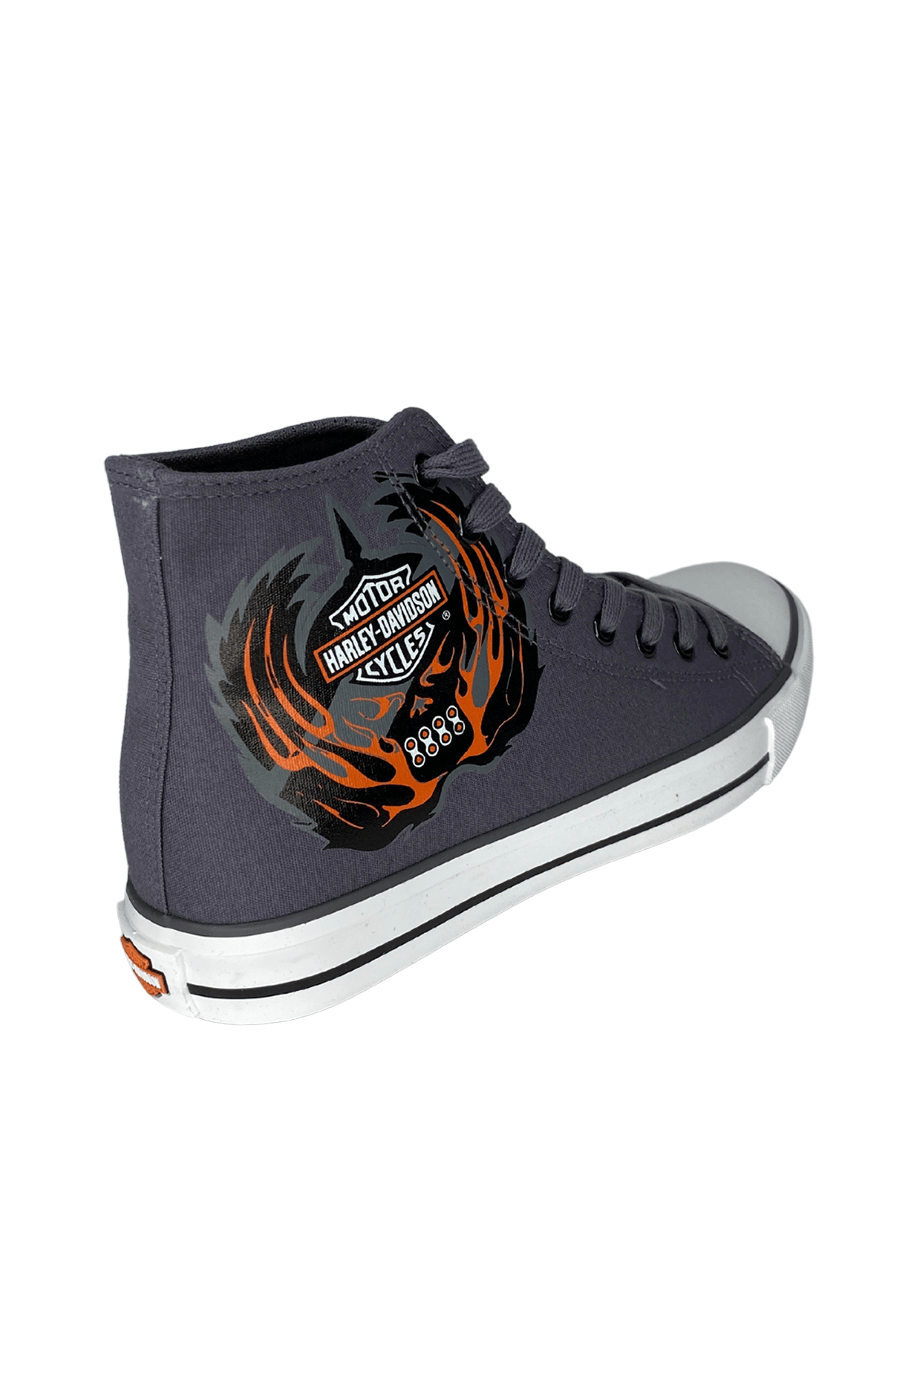 Harley-Davidson® Plano Grey Tekstil Erkek Sneaker